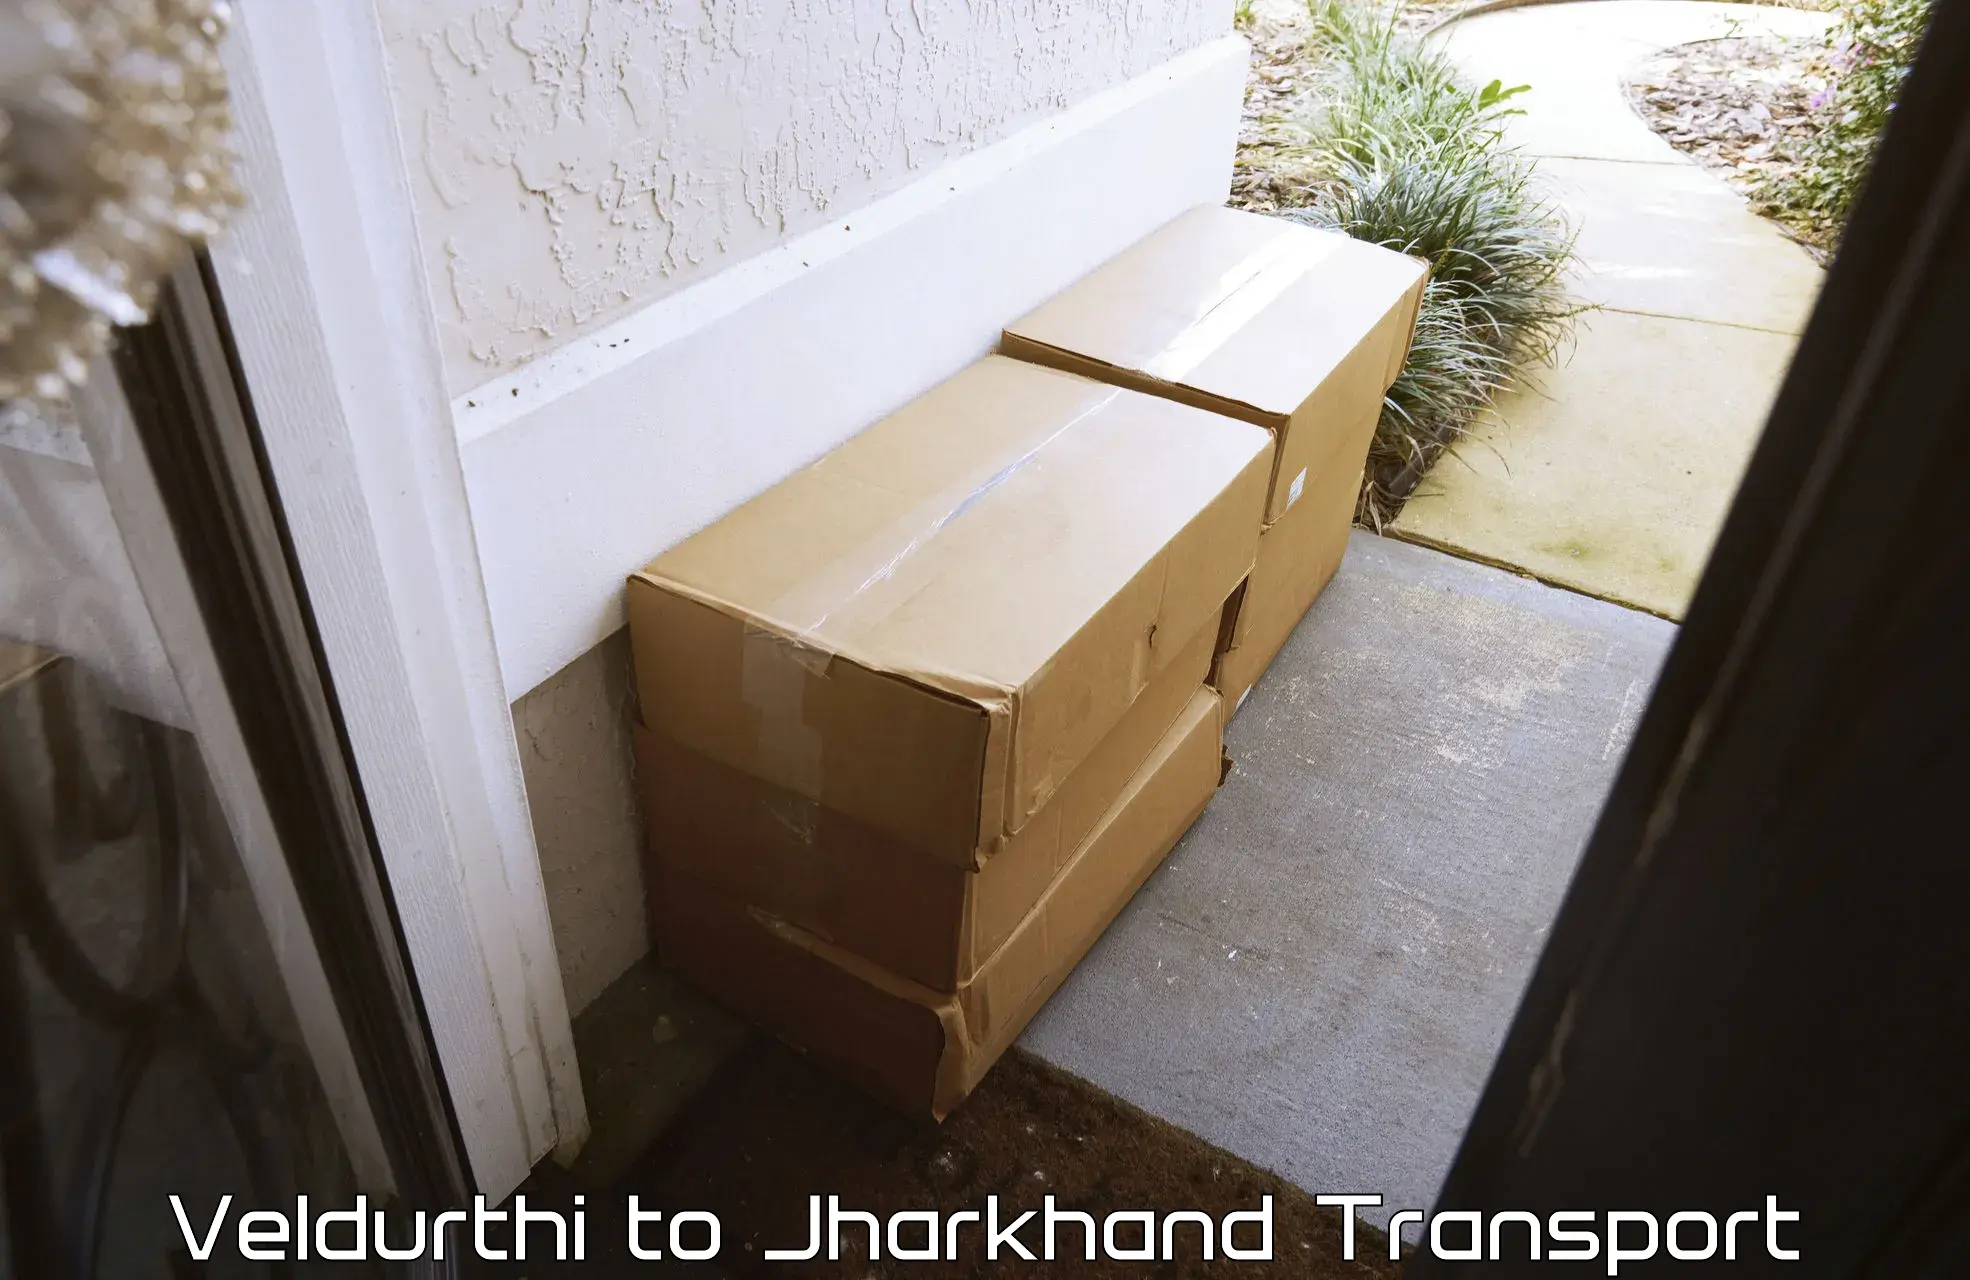 Transport in sharing Veldurthi to Doranda